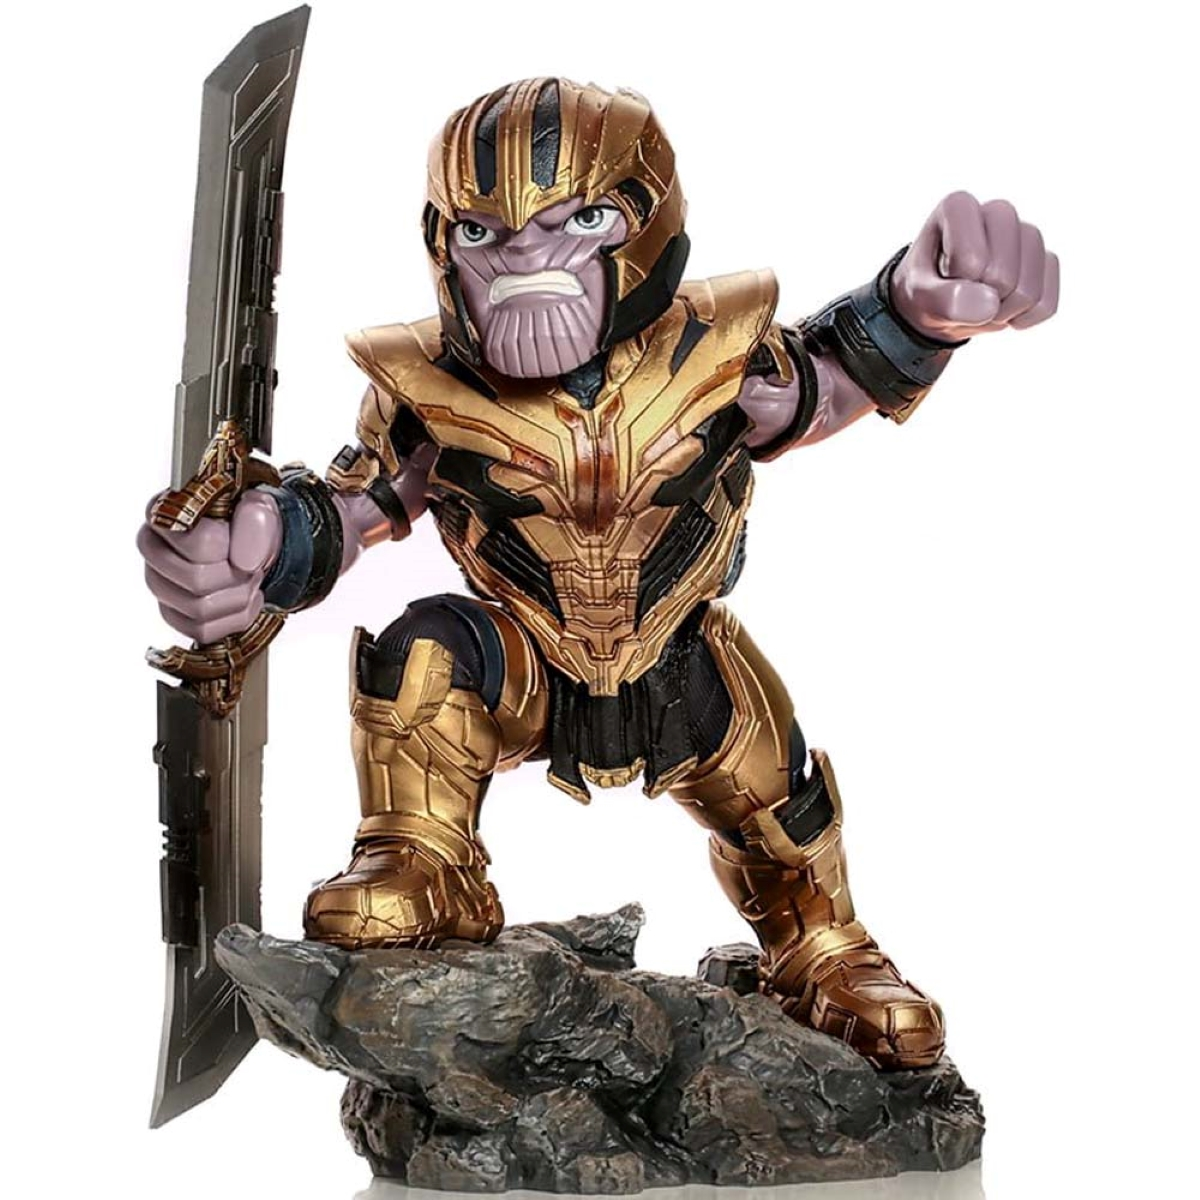 - Iron figur Figur Studios Thanos & Avengers: STUDIOS IRON Endgame Minico